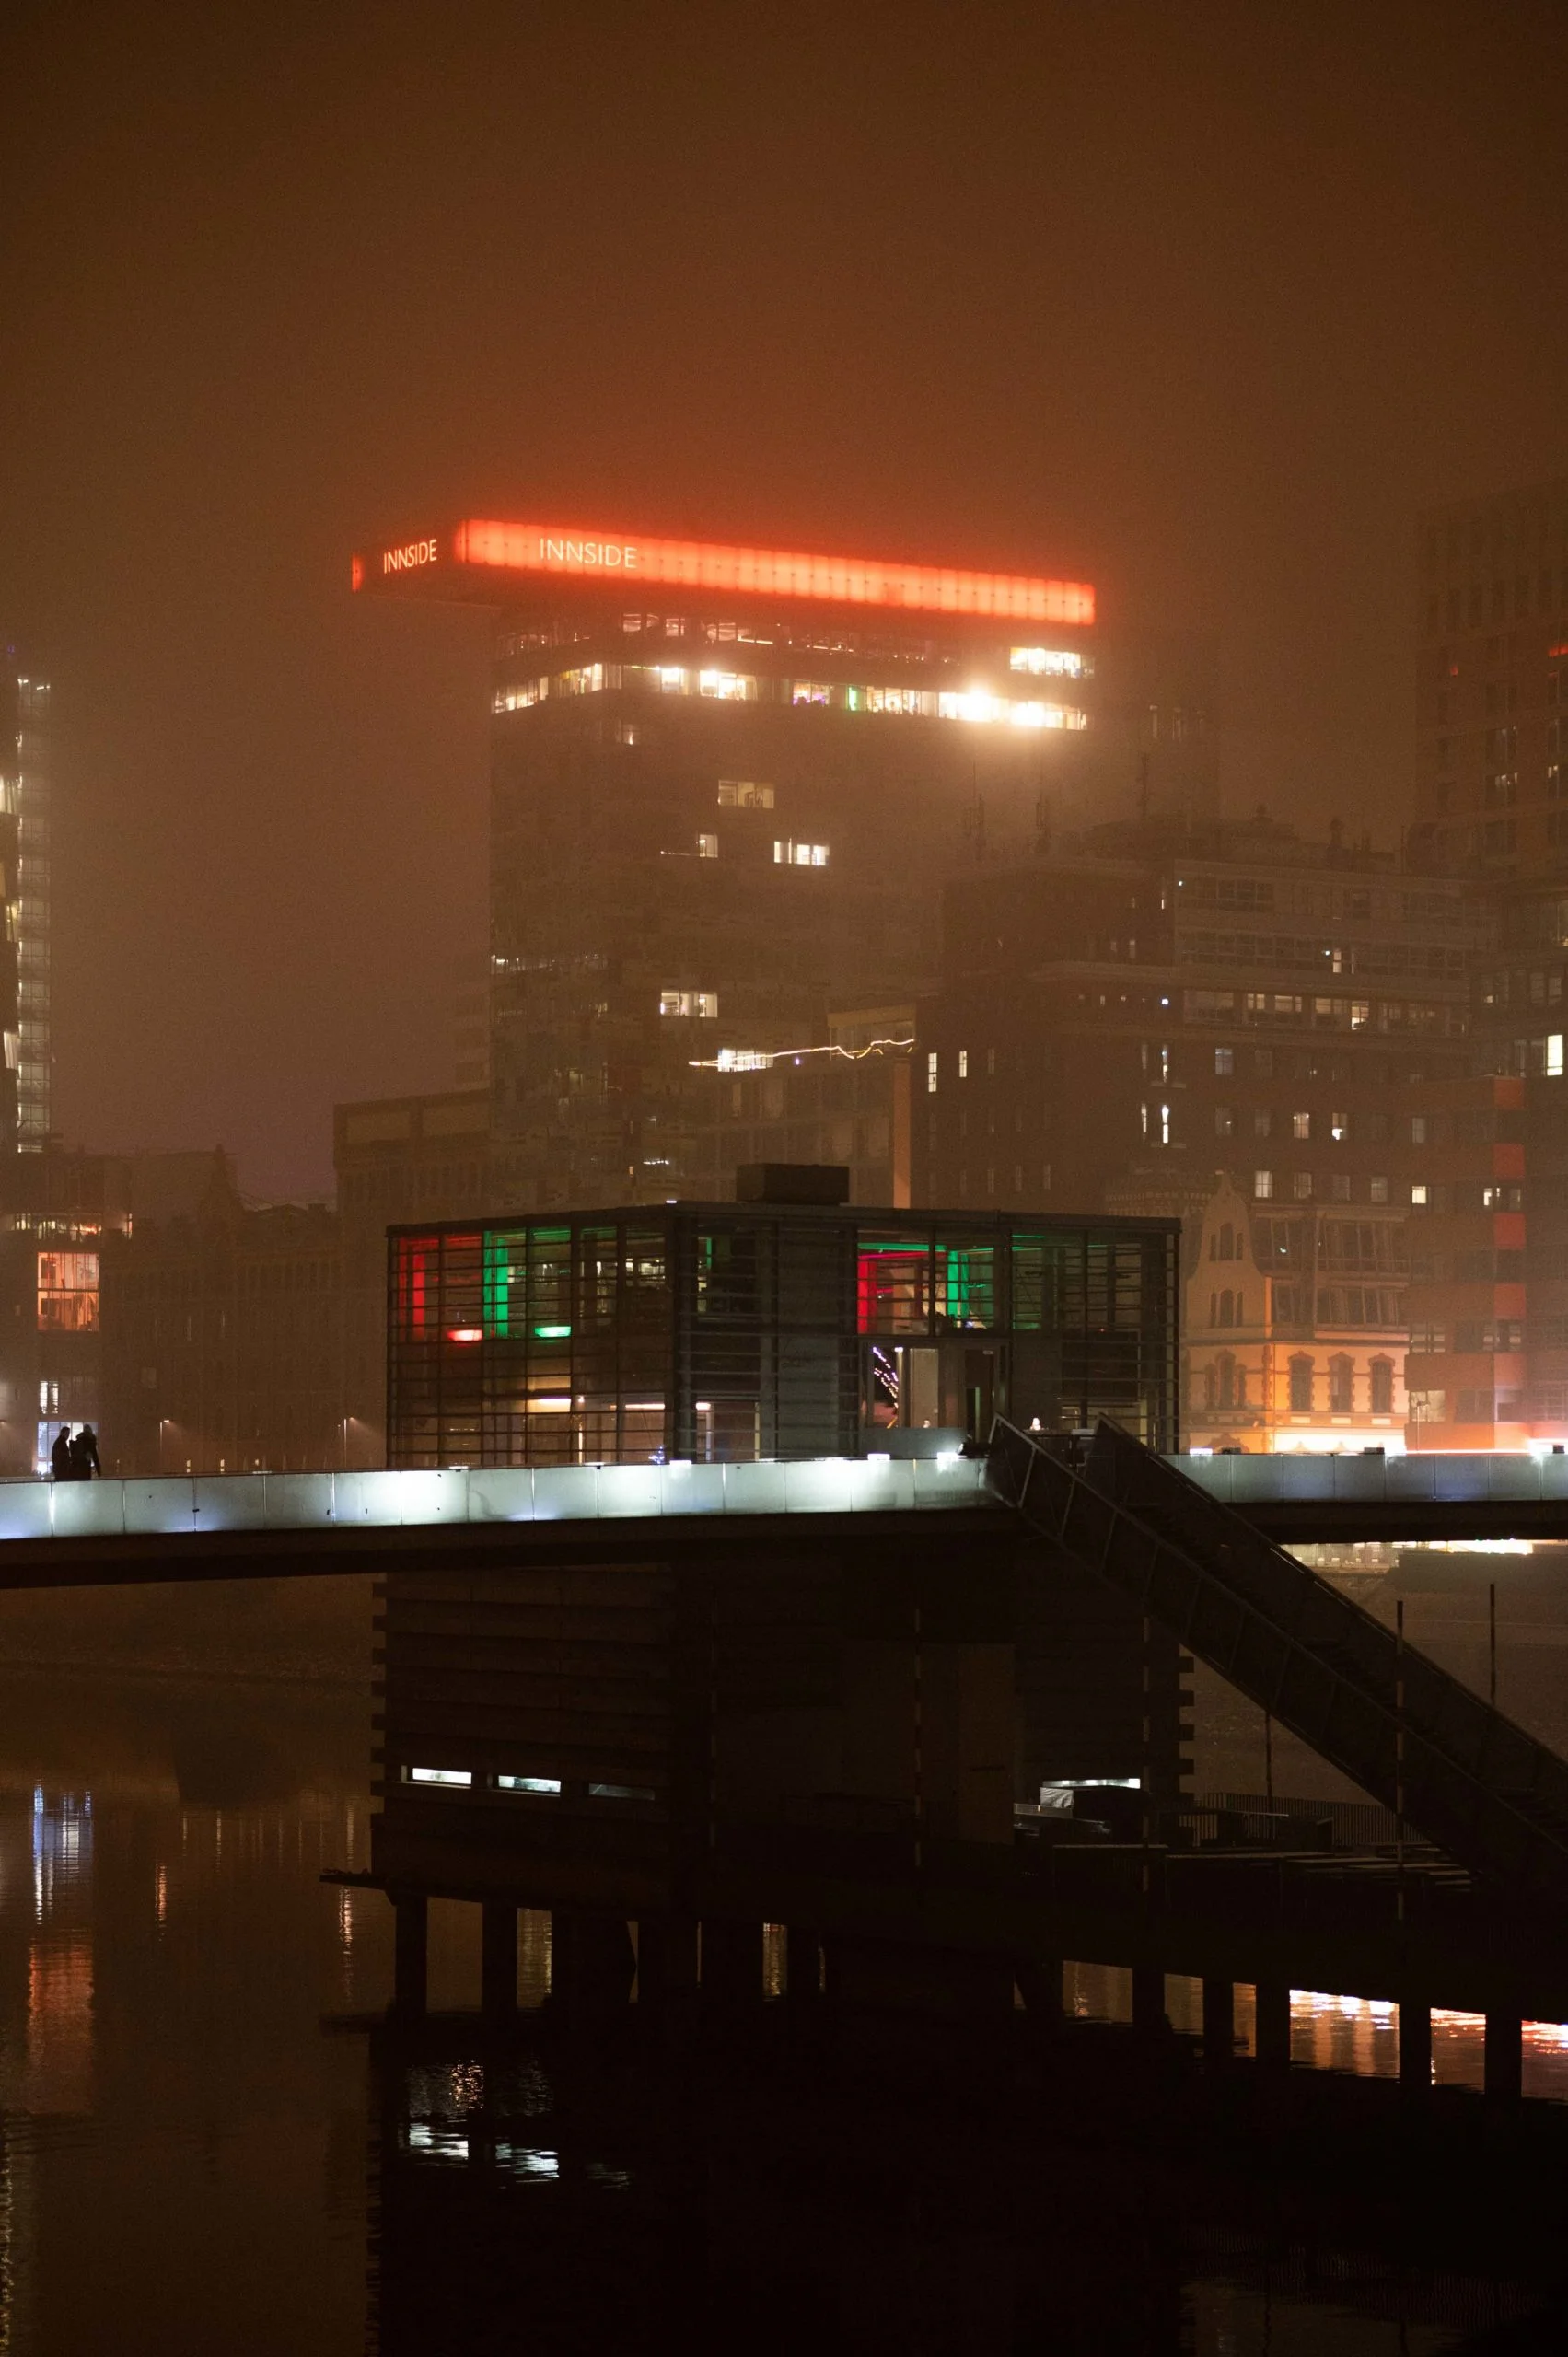 Düsseldorf Medienhafen Aufnahme des Hochauses Colorium, mit dem Restaurant Lido im Vordergrund. Architekturfoto Streetfotografie. Teleaufnahme im Nebel